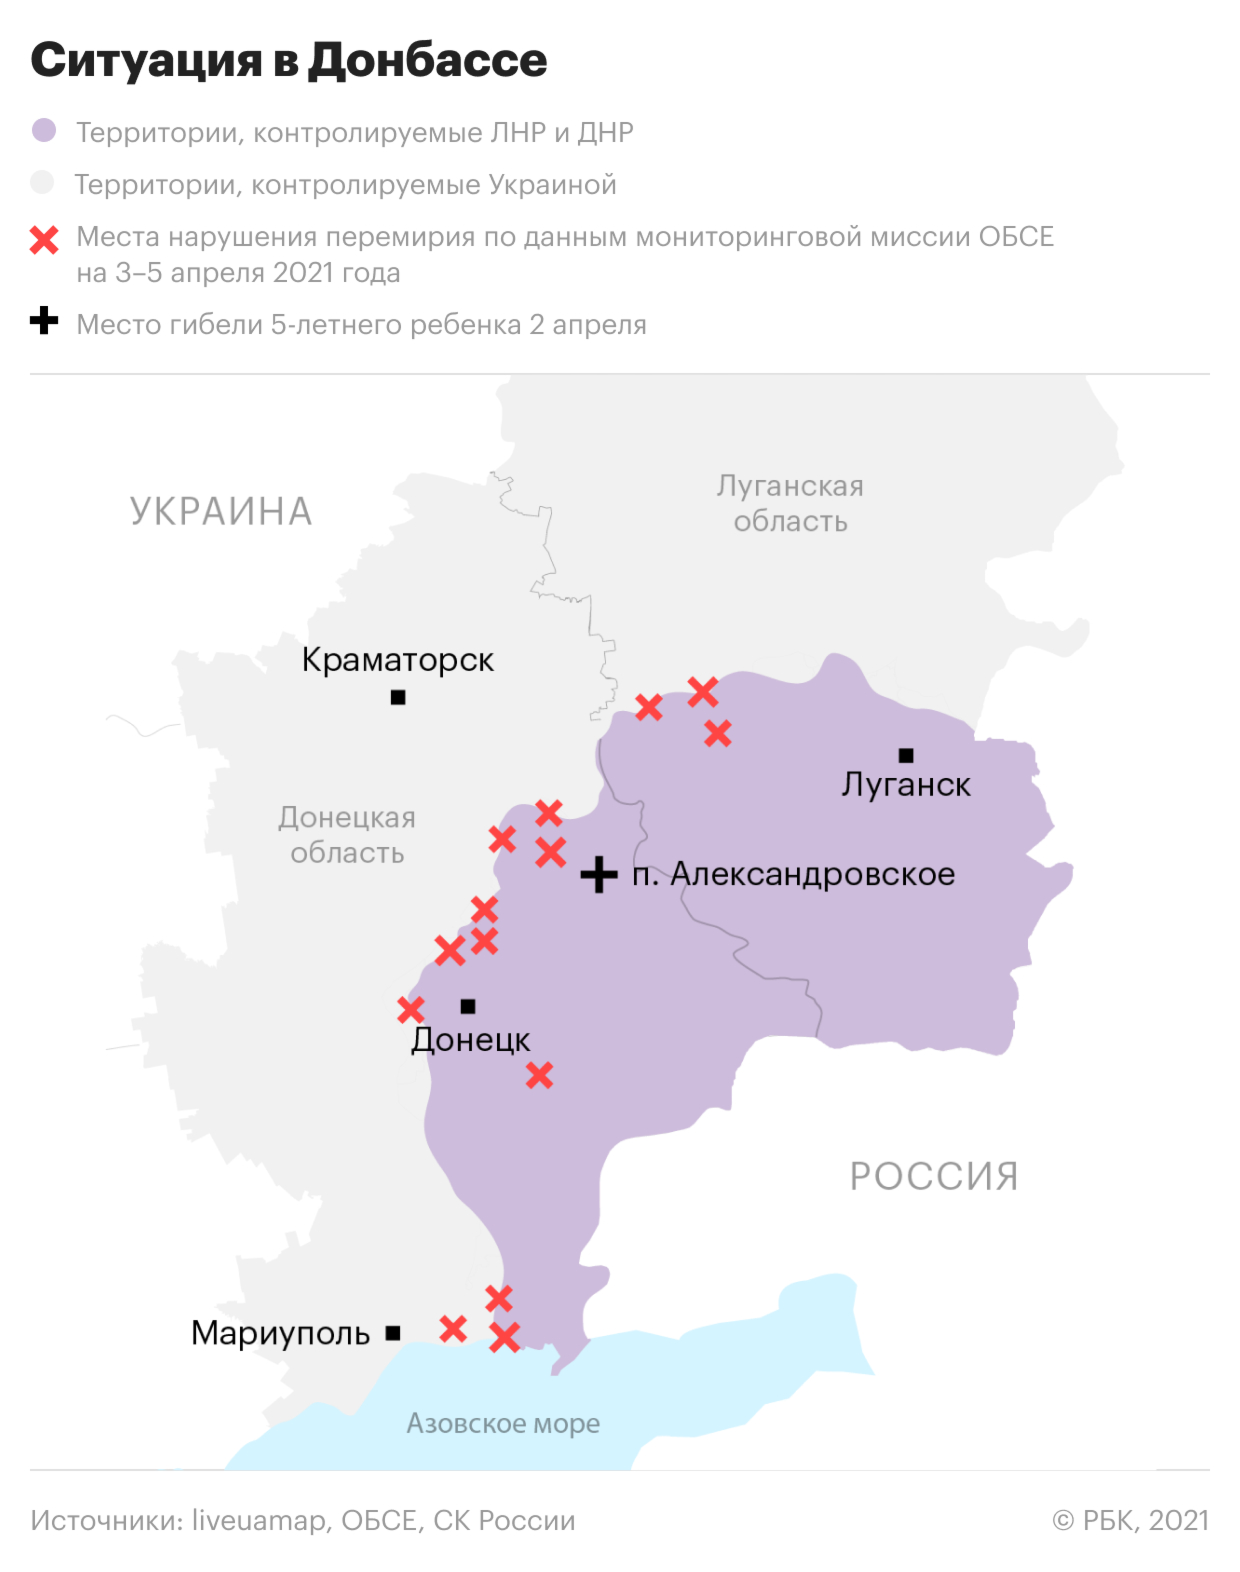 Что происходит в Донбассе и возможна ли там дальнейшая эскалация